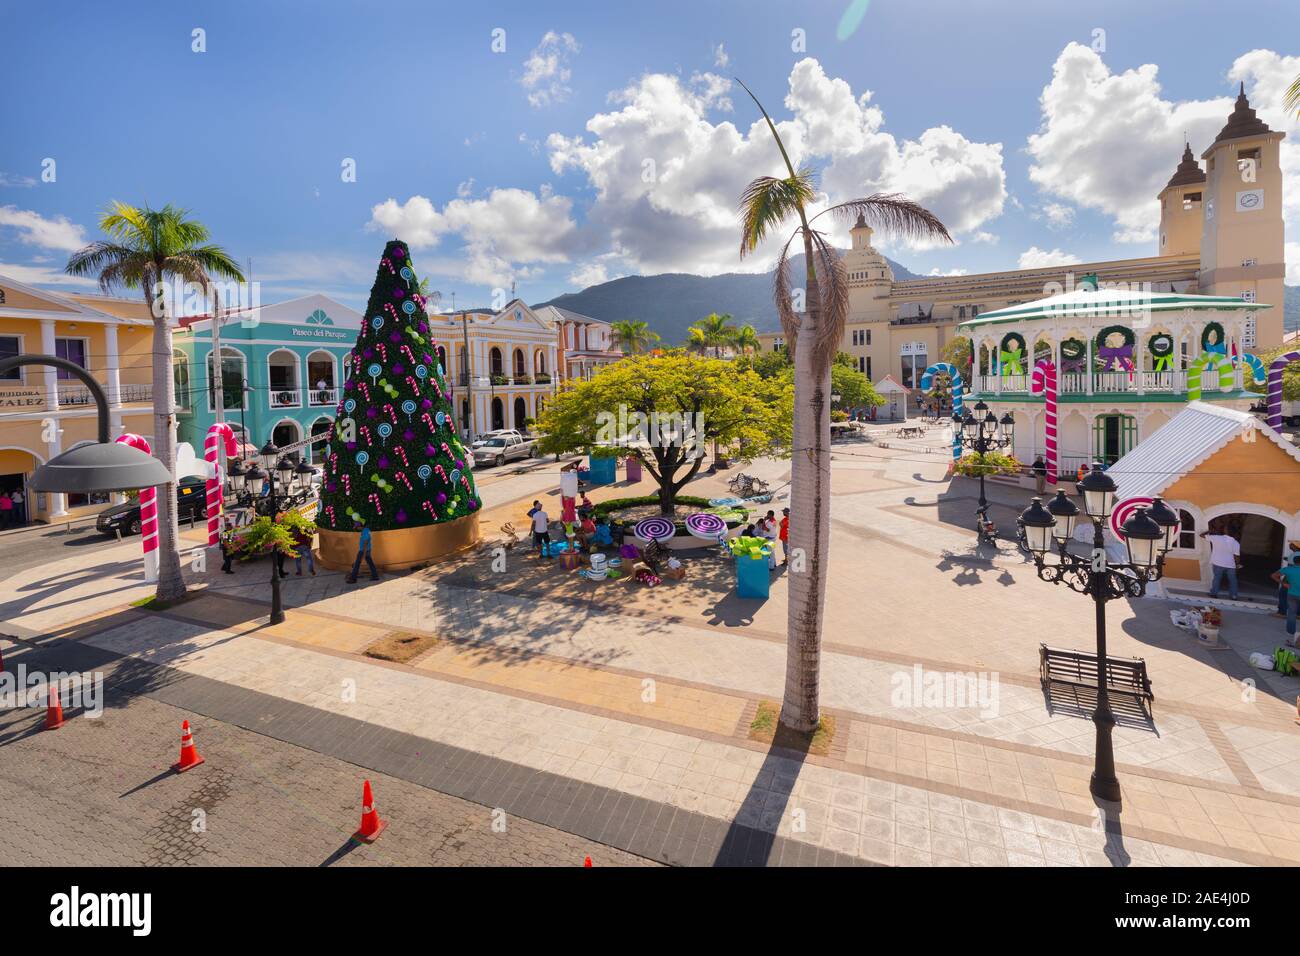 Les travailleurs qui mettent des décorations de Noël sur la place de la ville d'Amérique latine de Puerto Plata, République dominicaine sur l'île d'Hispaniola. Banque D'Images